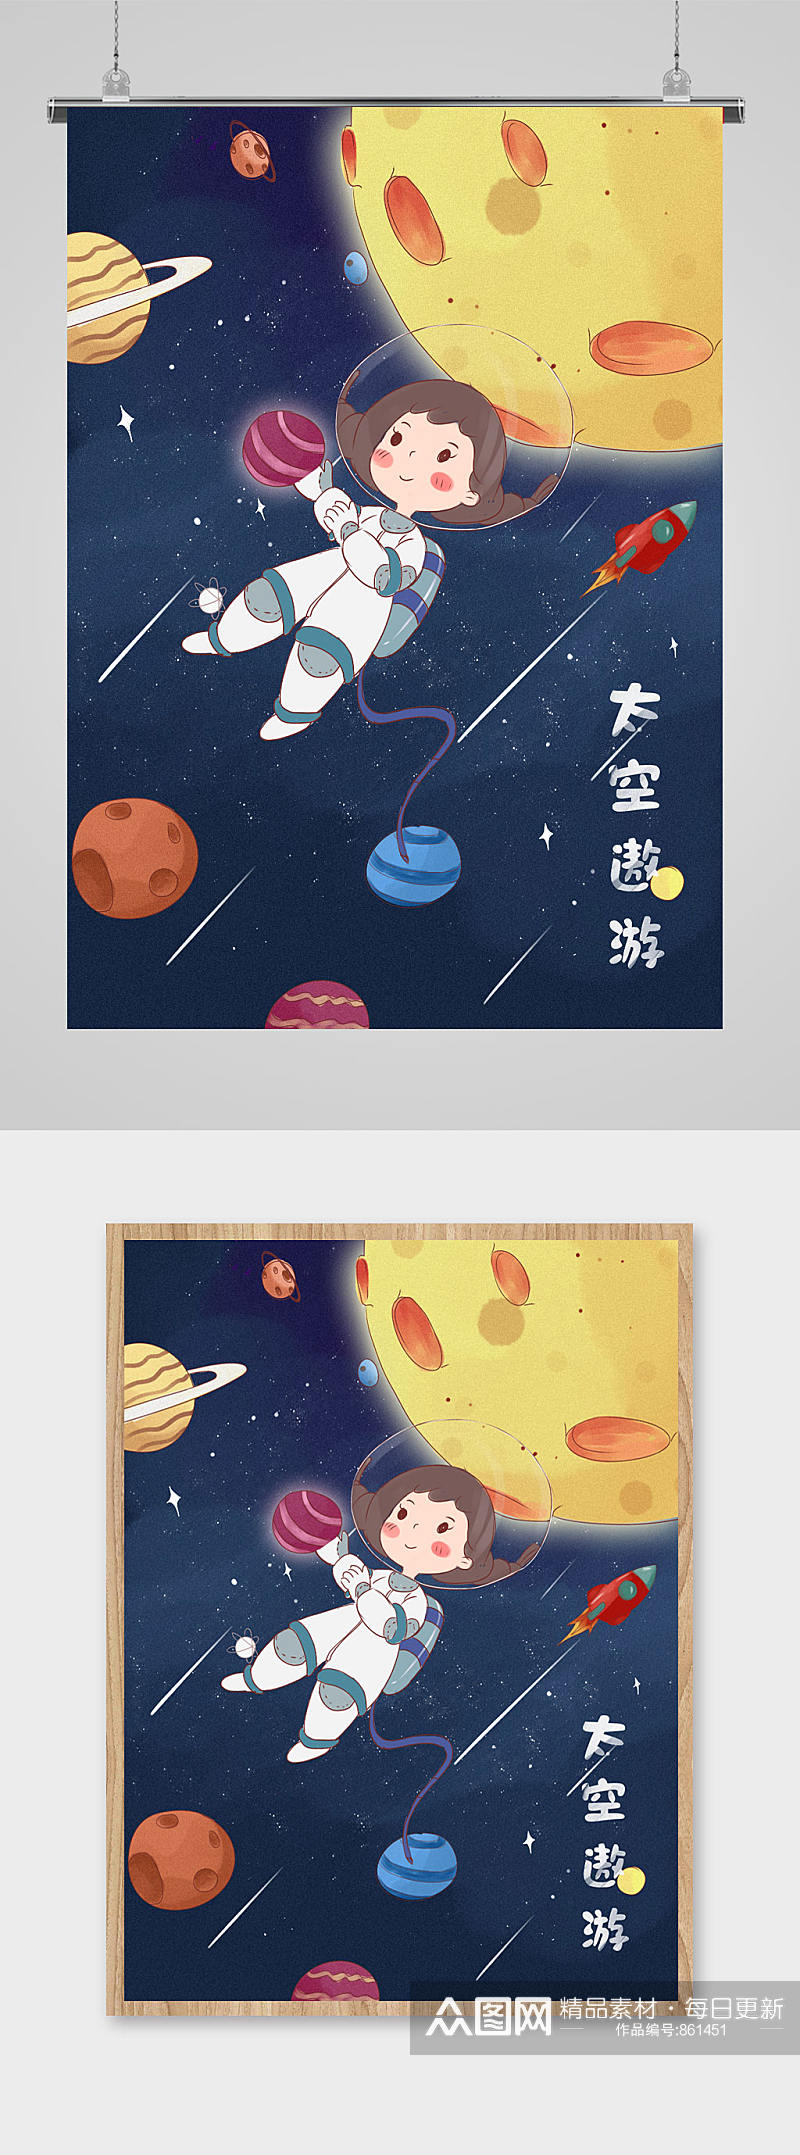 太空宇航员主题插画素材